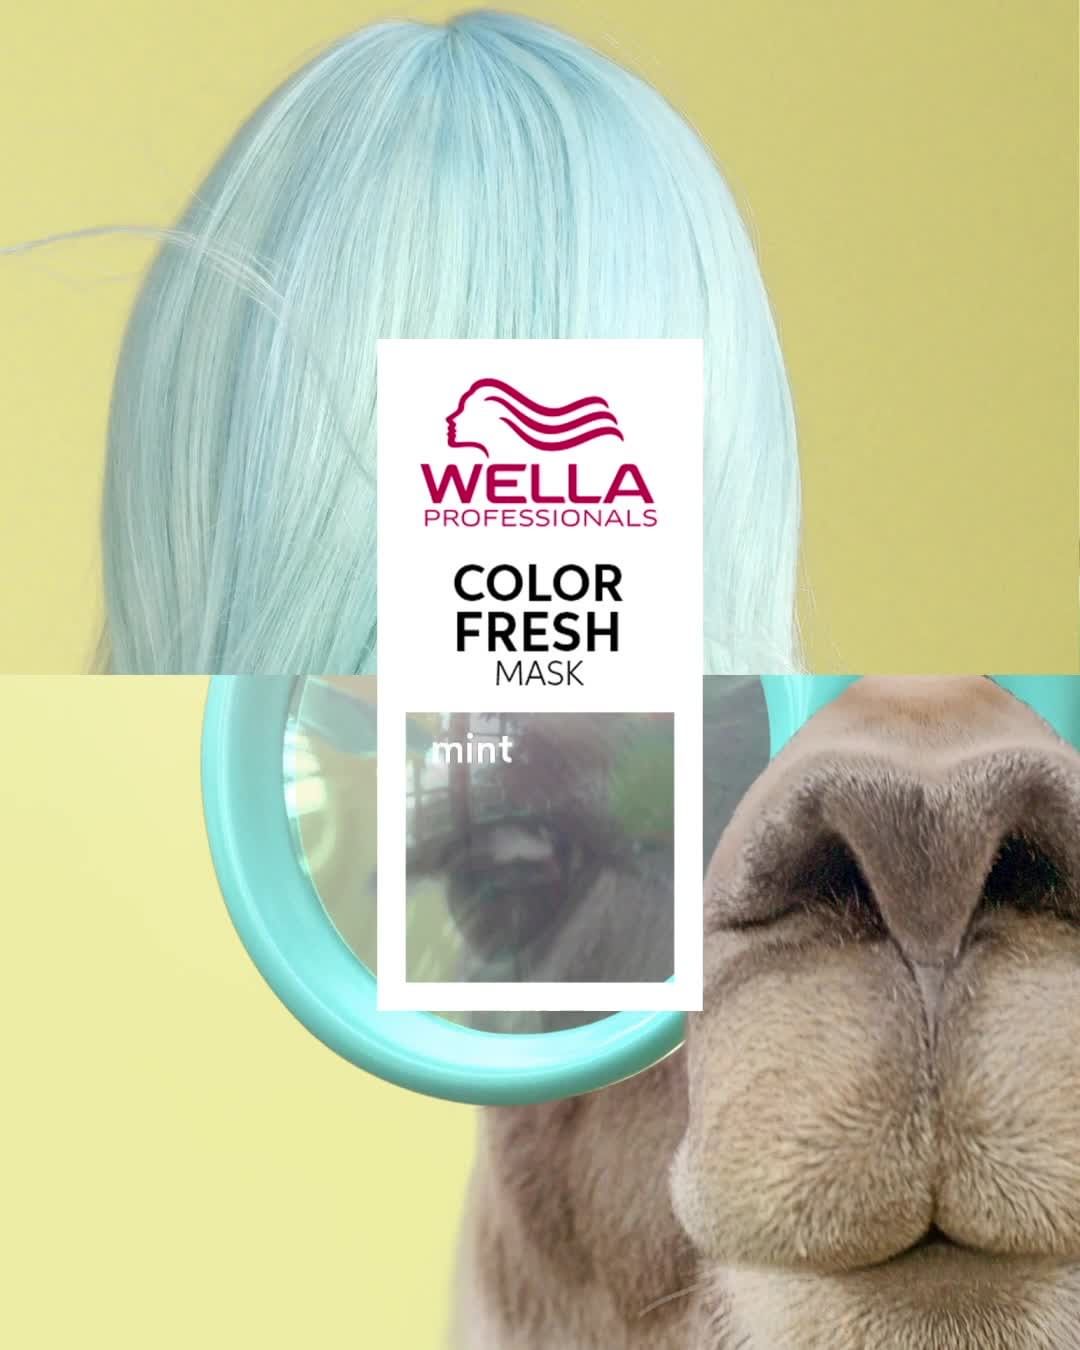 Wella Professionals Russia - Оттеночная маска с ухаживающим эффектом – звучит слишком хорошо, чтобы быть правдой? Но с Color Fresh Mask всё возможно, так еще и в домашних условиях😍

Вас ждёт невероятн...